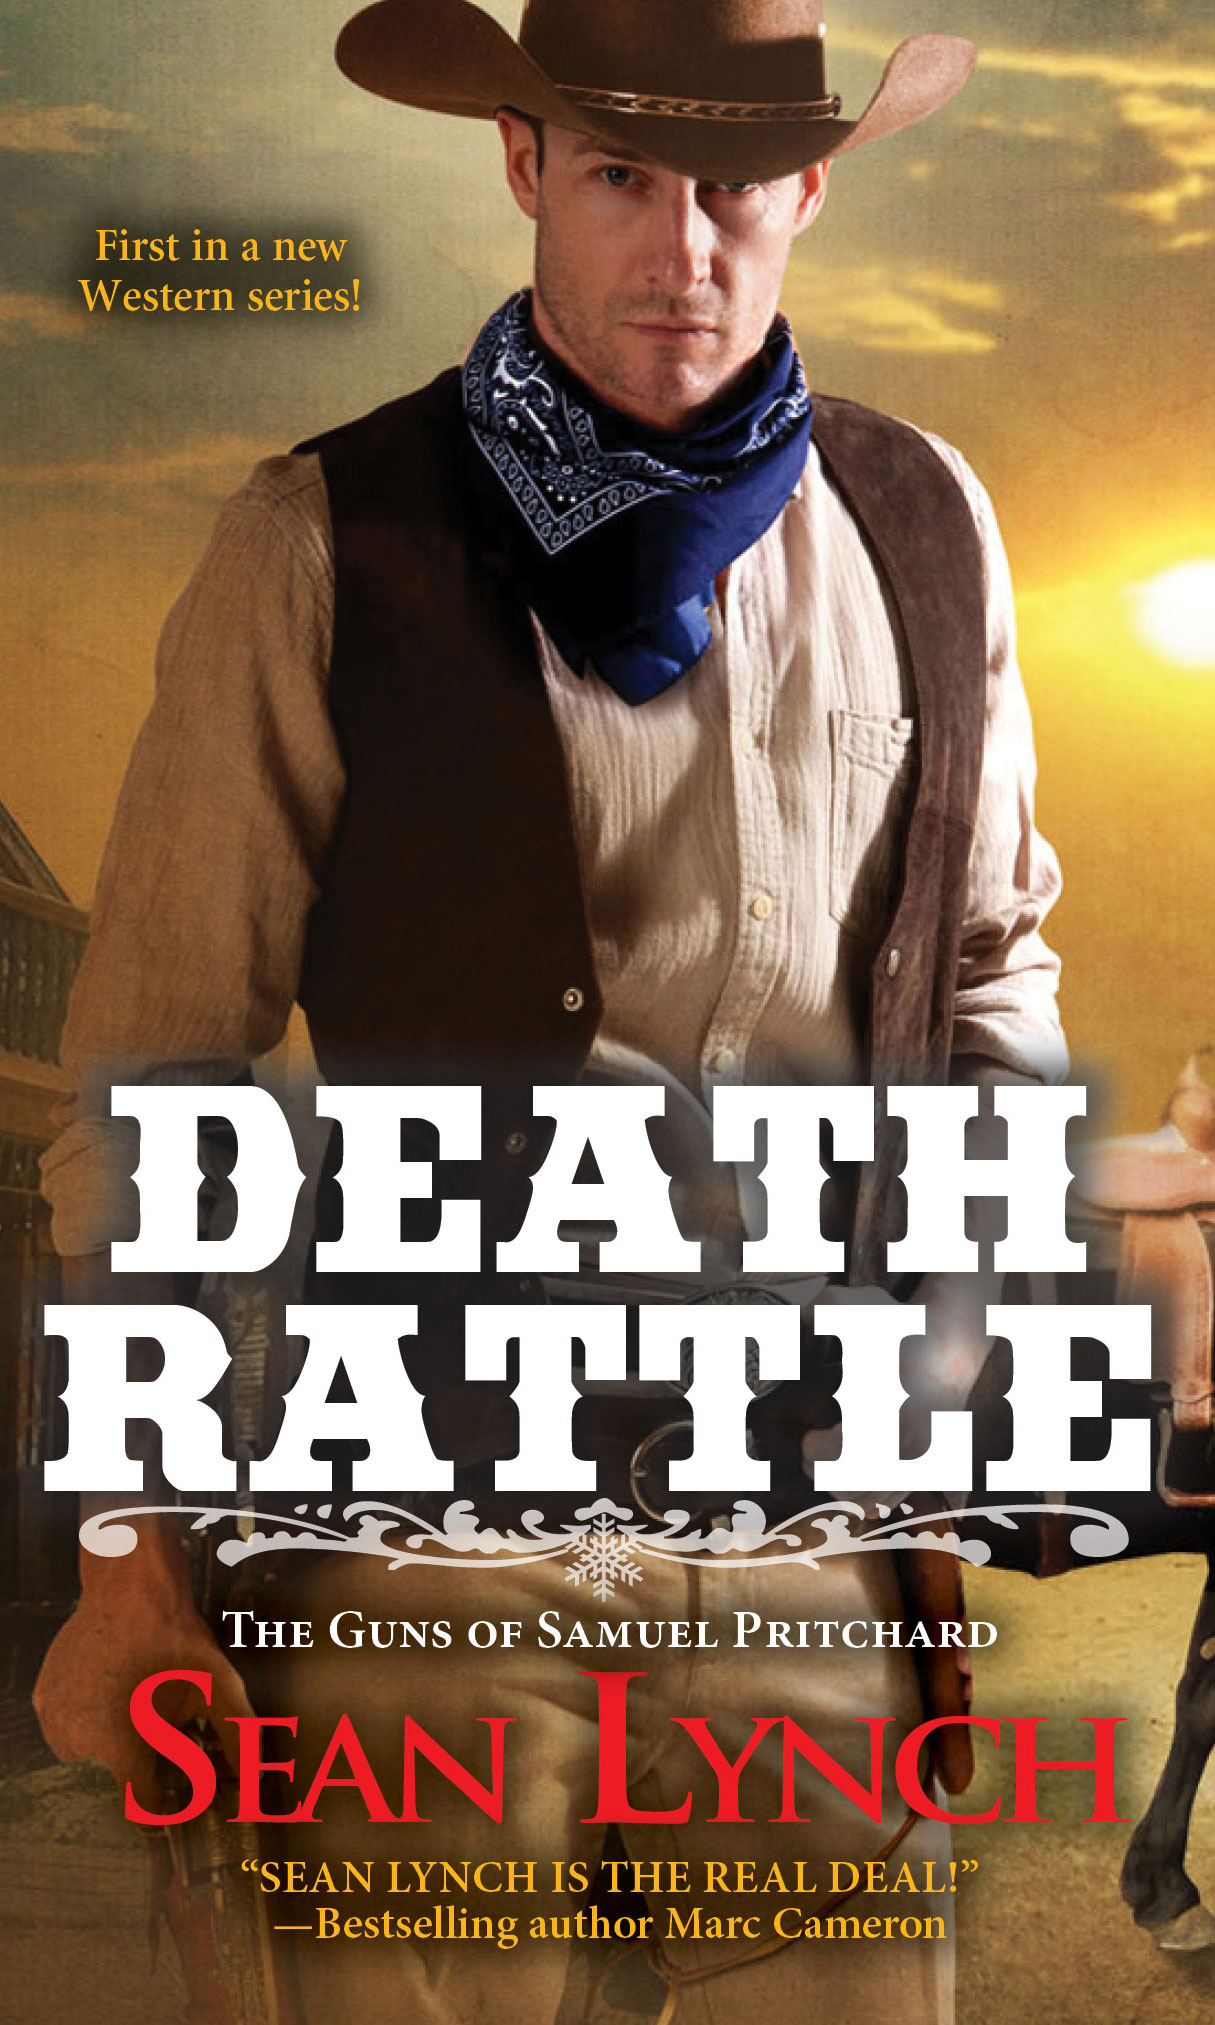 DEATH RATTLE by Sean Lynch